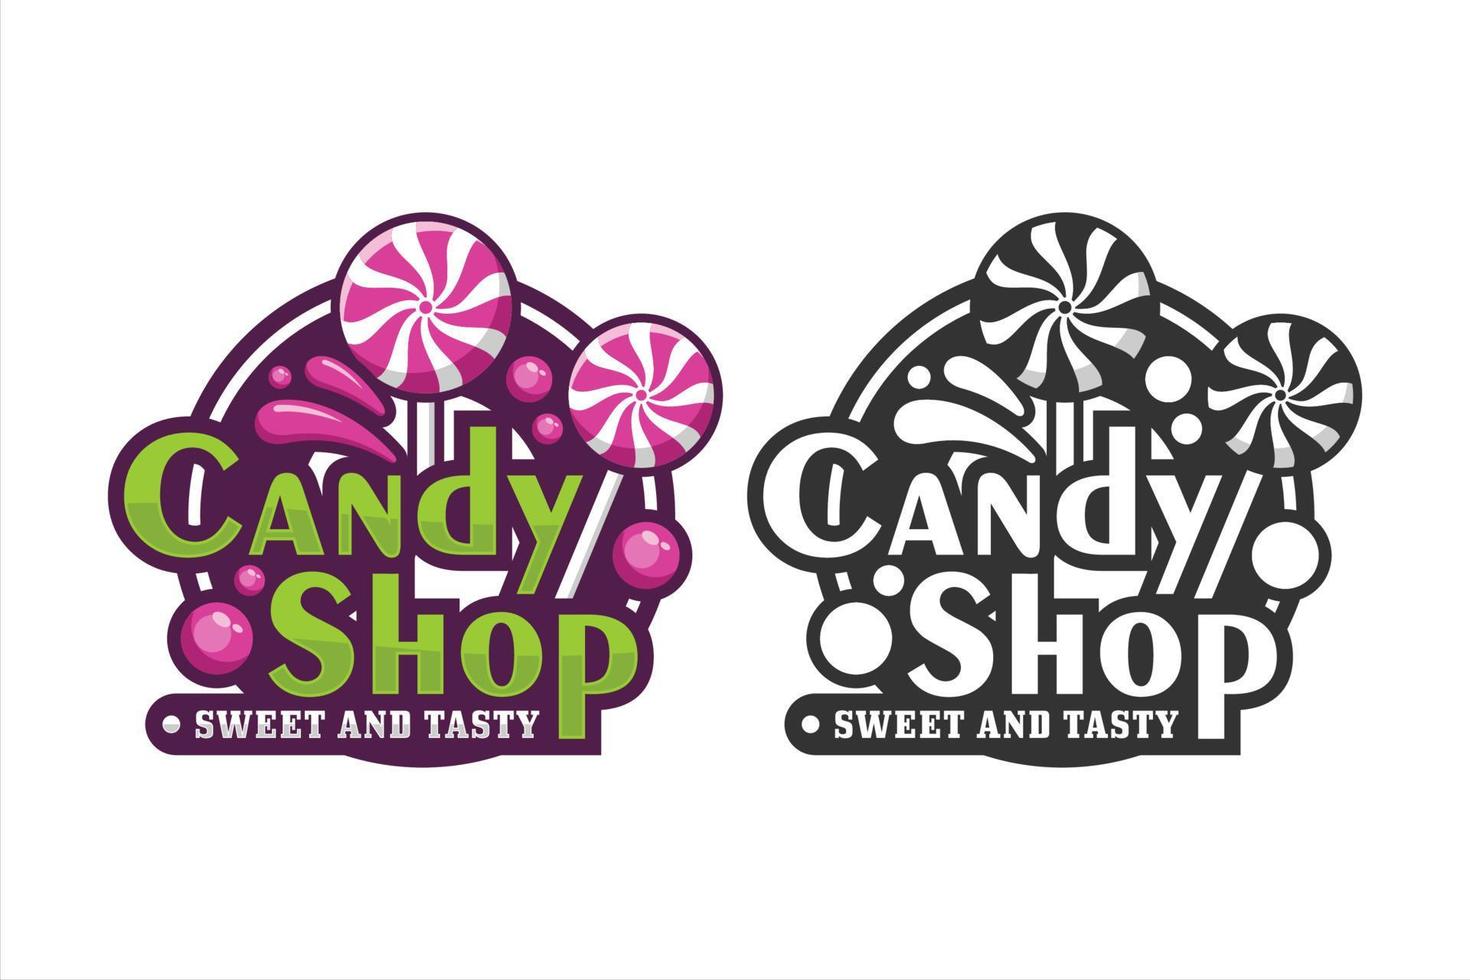 Candy shop design premium logo vector